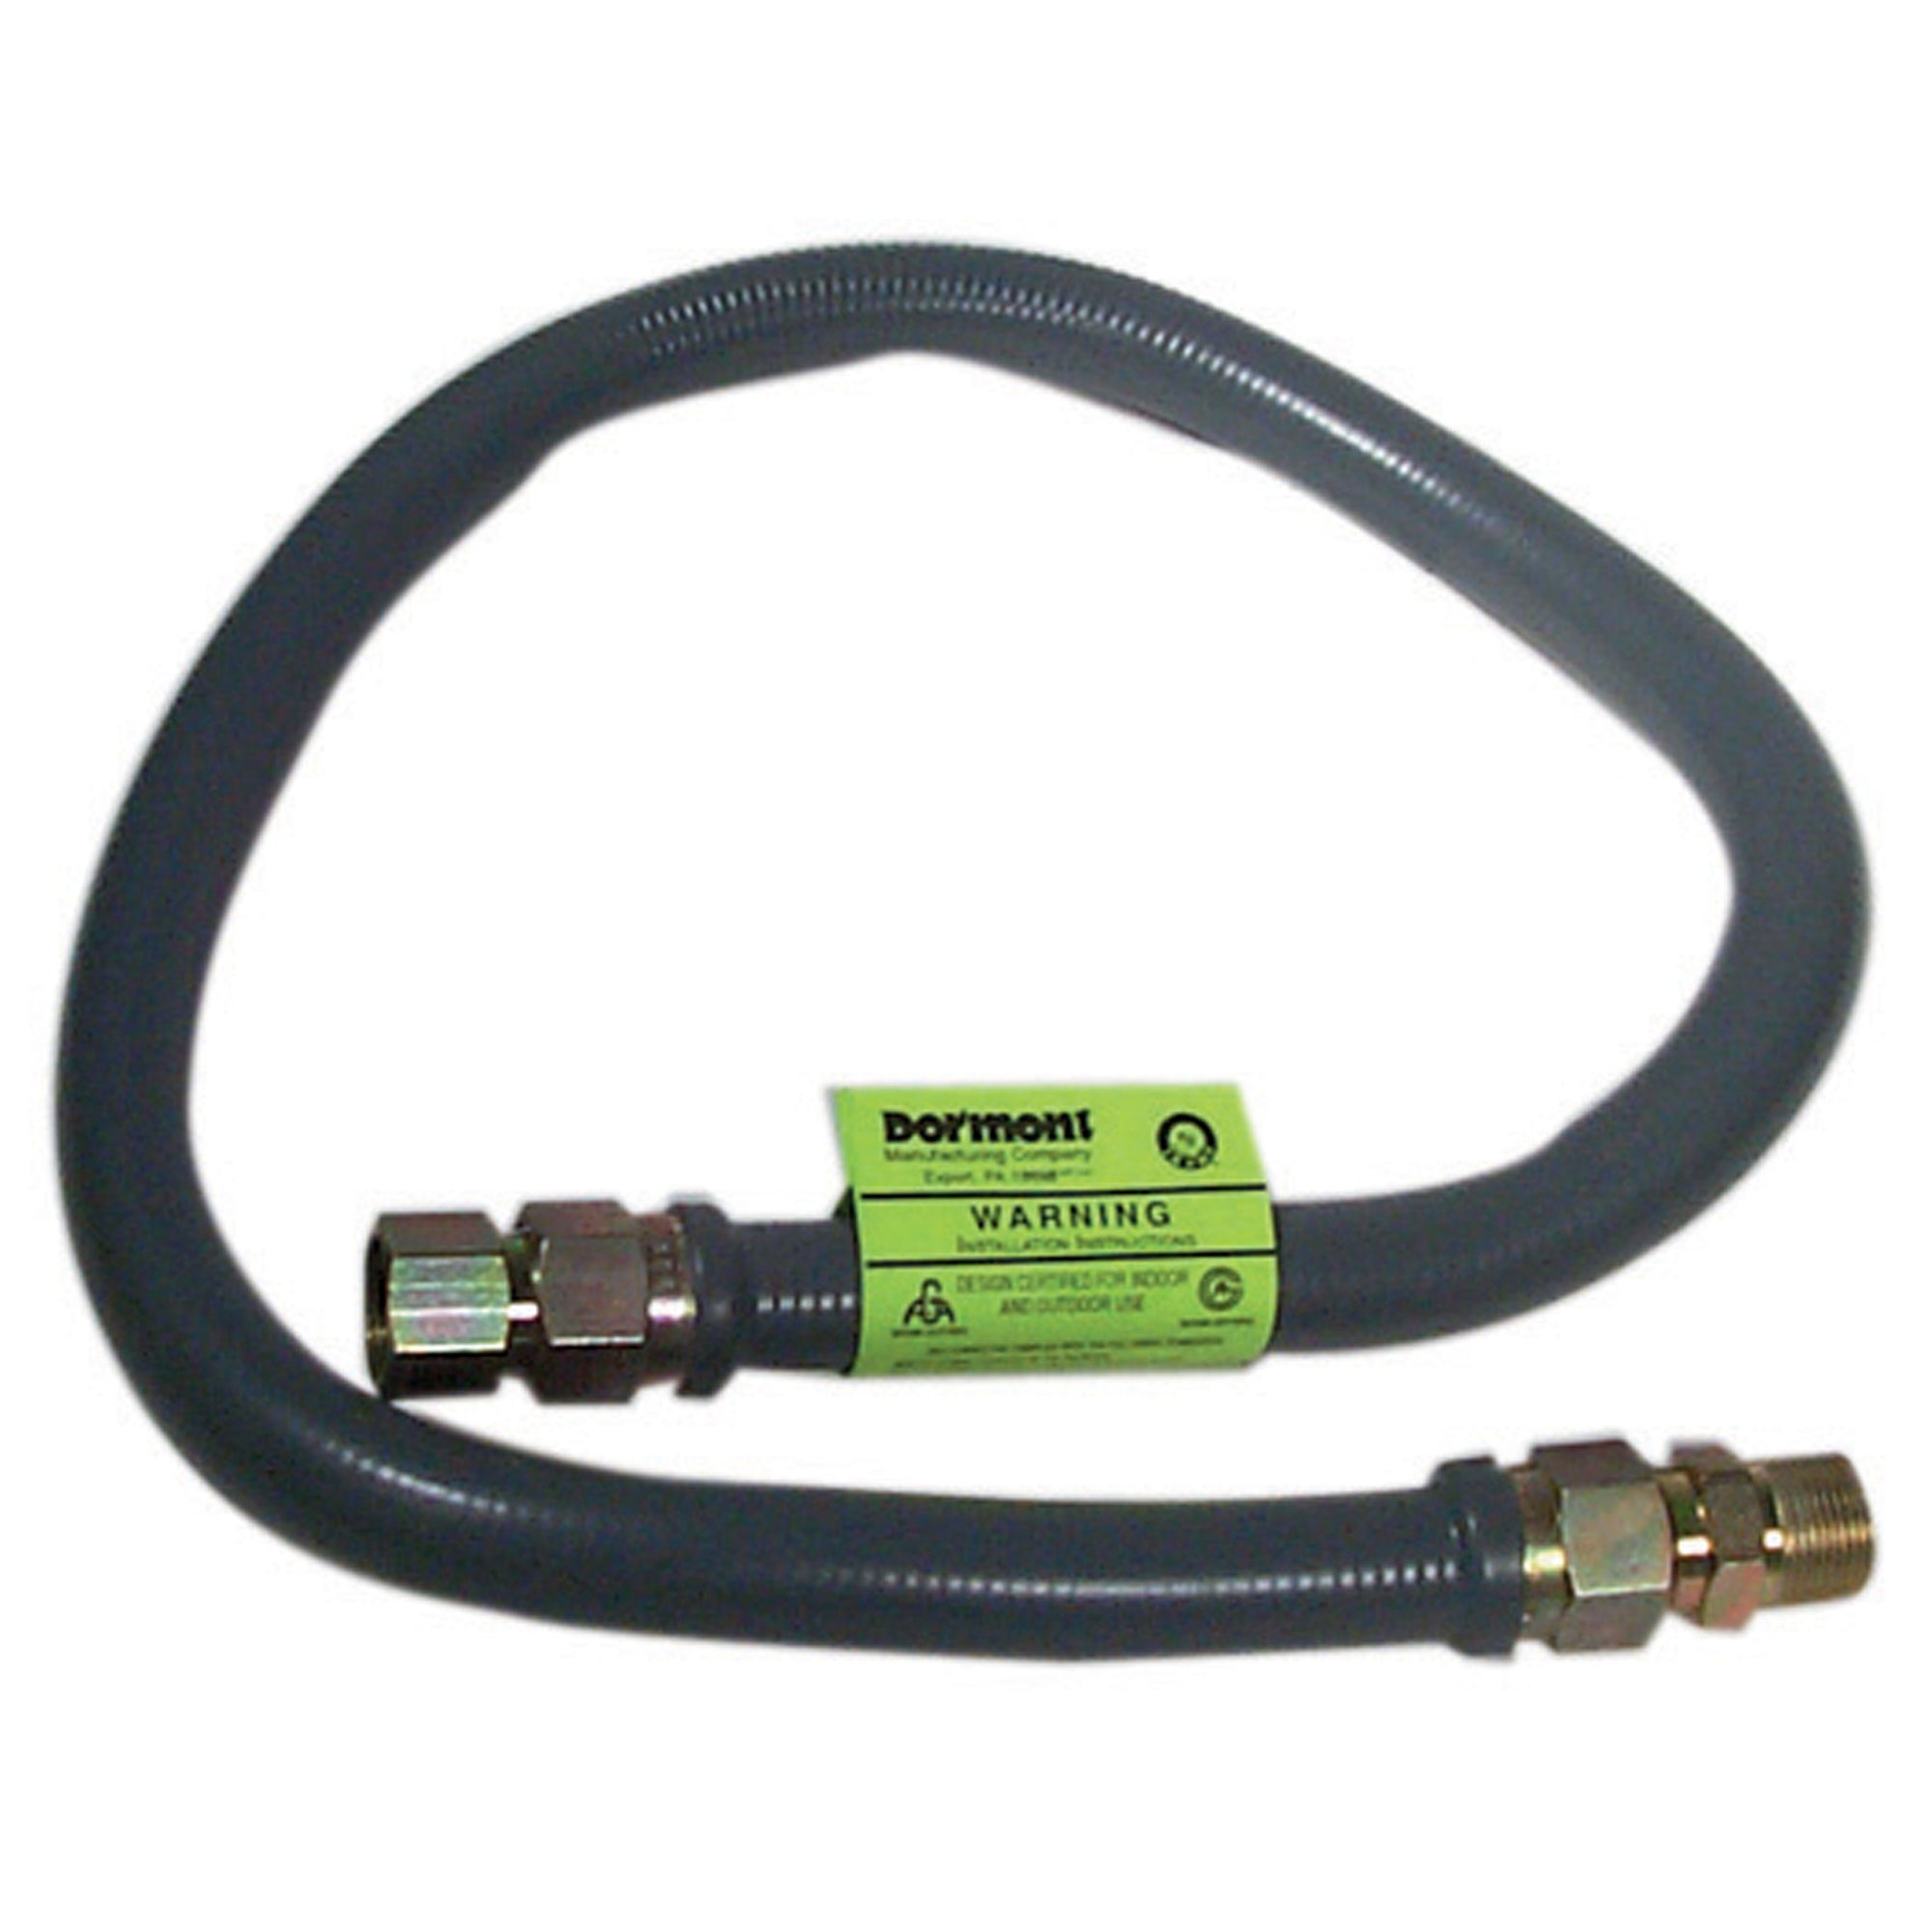 Dormont 41-4142-36 MXF Gas Supply Connector - 3/4" MIP x 3/4" MIP, 36"